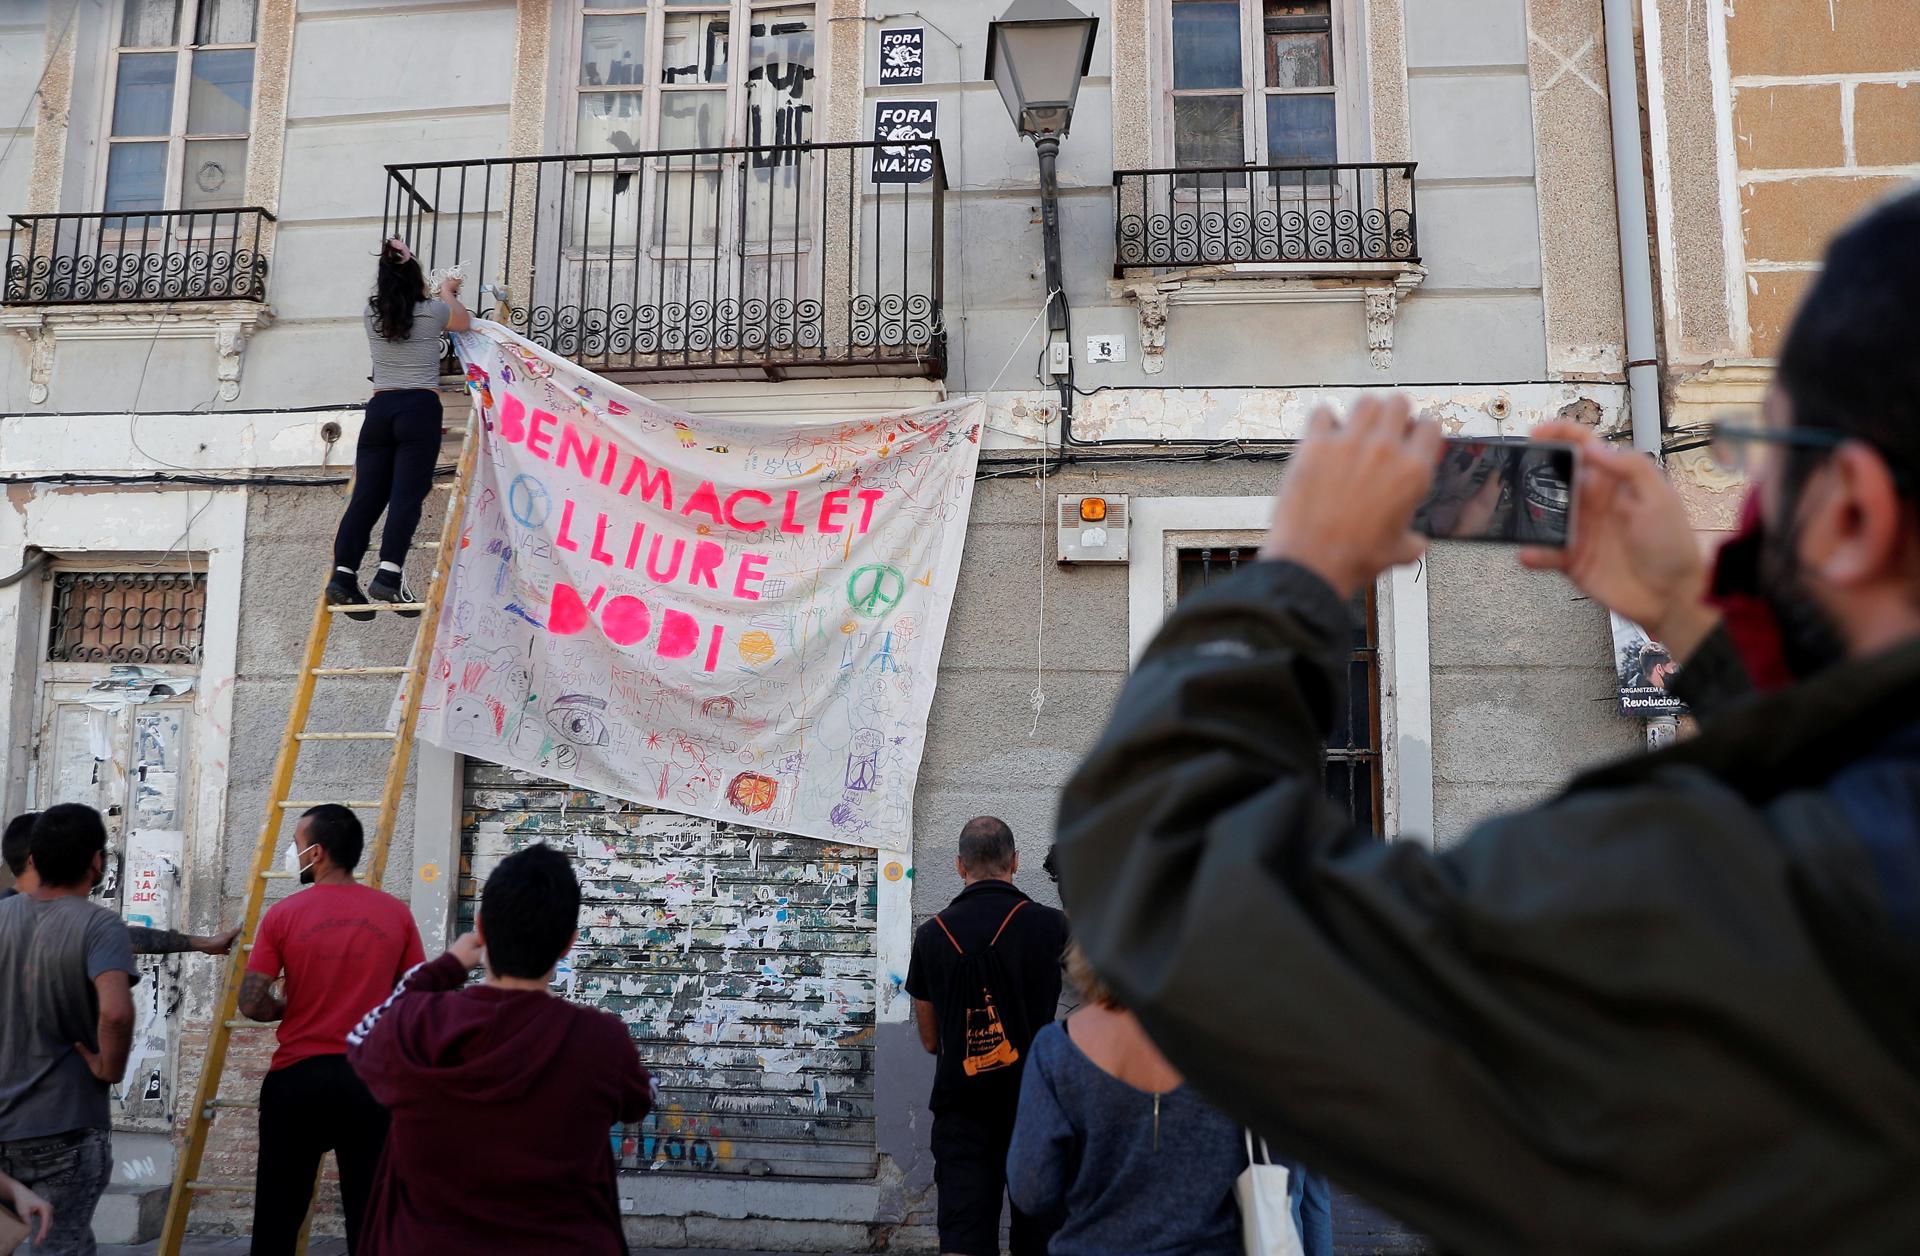 Imagen de archivo de vecinos de Benimaclet colgando una pancarta con el lema "Benimaclet libre de odio". EFE/Kai Försterling/Archivo